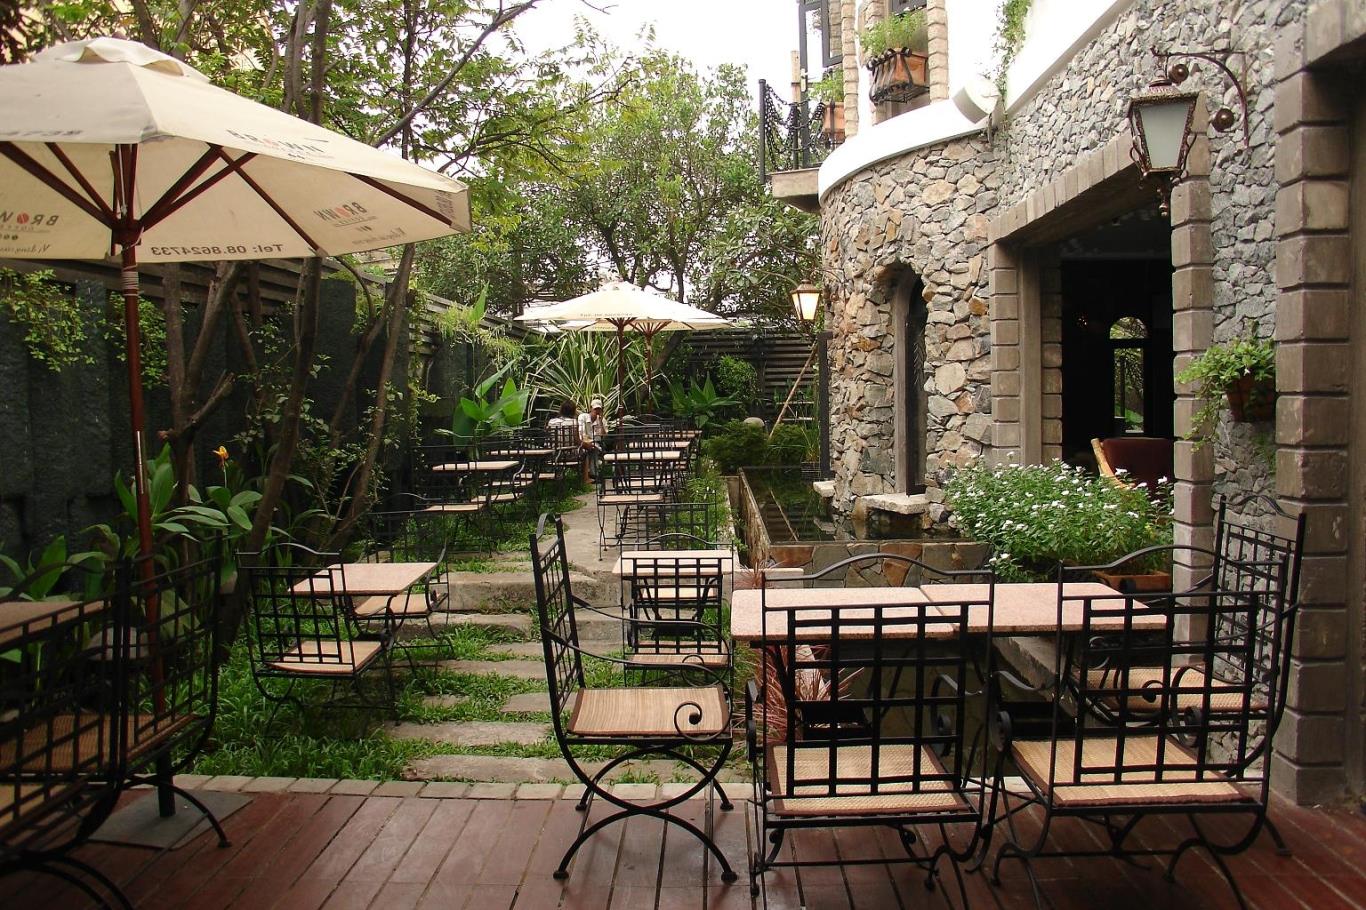 Huyền Thoại vừa là một địa điểm hẹn hò lý tưởng, vừa là một không gian quán cà phê sân vườn mang lại trải nghiệm mới lạ tại quận Bình Tân